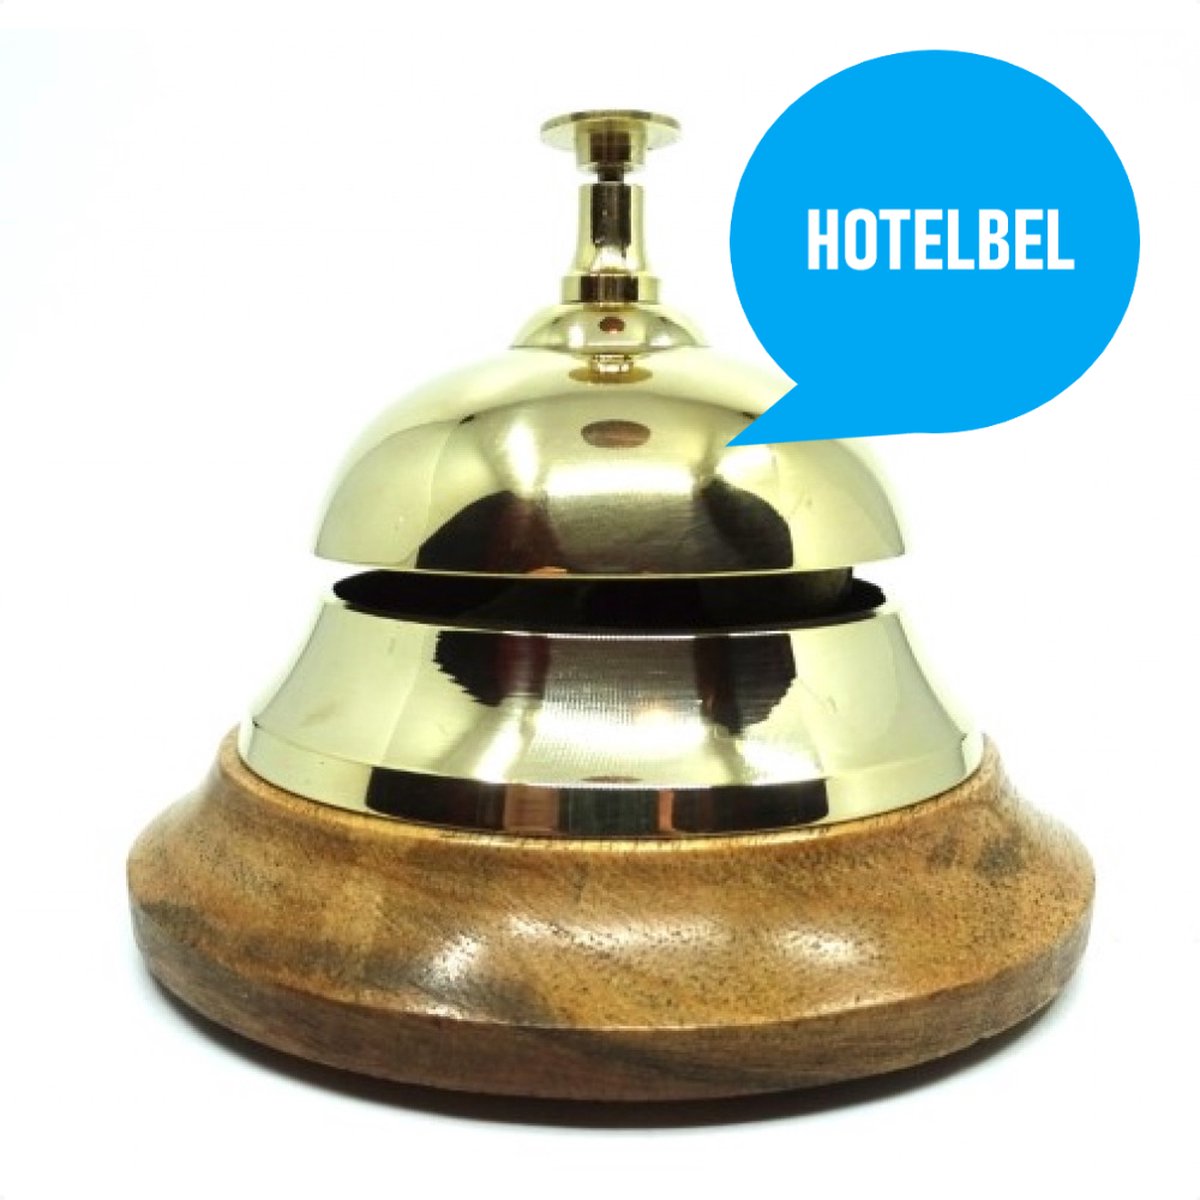 Hotelbel - Receptiebel - Bel - Metaal op houten sokkel - Hoogwaardige kwaliteit - Luxe - Cadeau voor man of vrouw - Relatiegeschenk